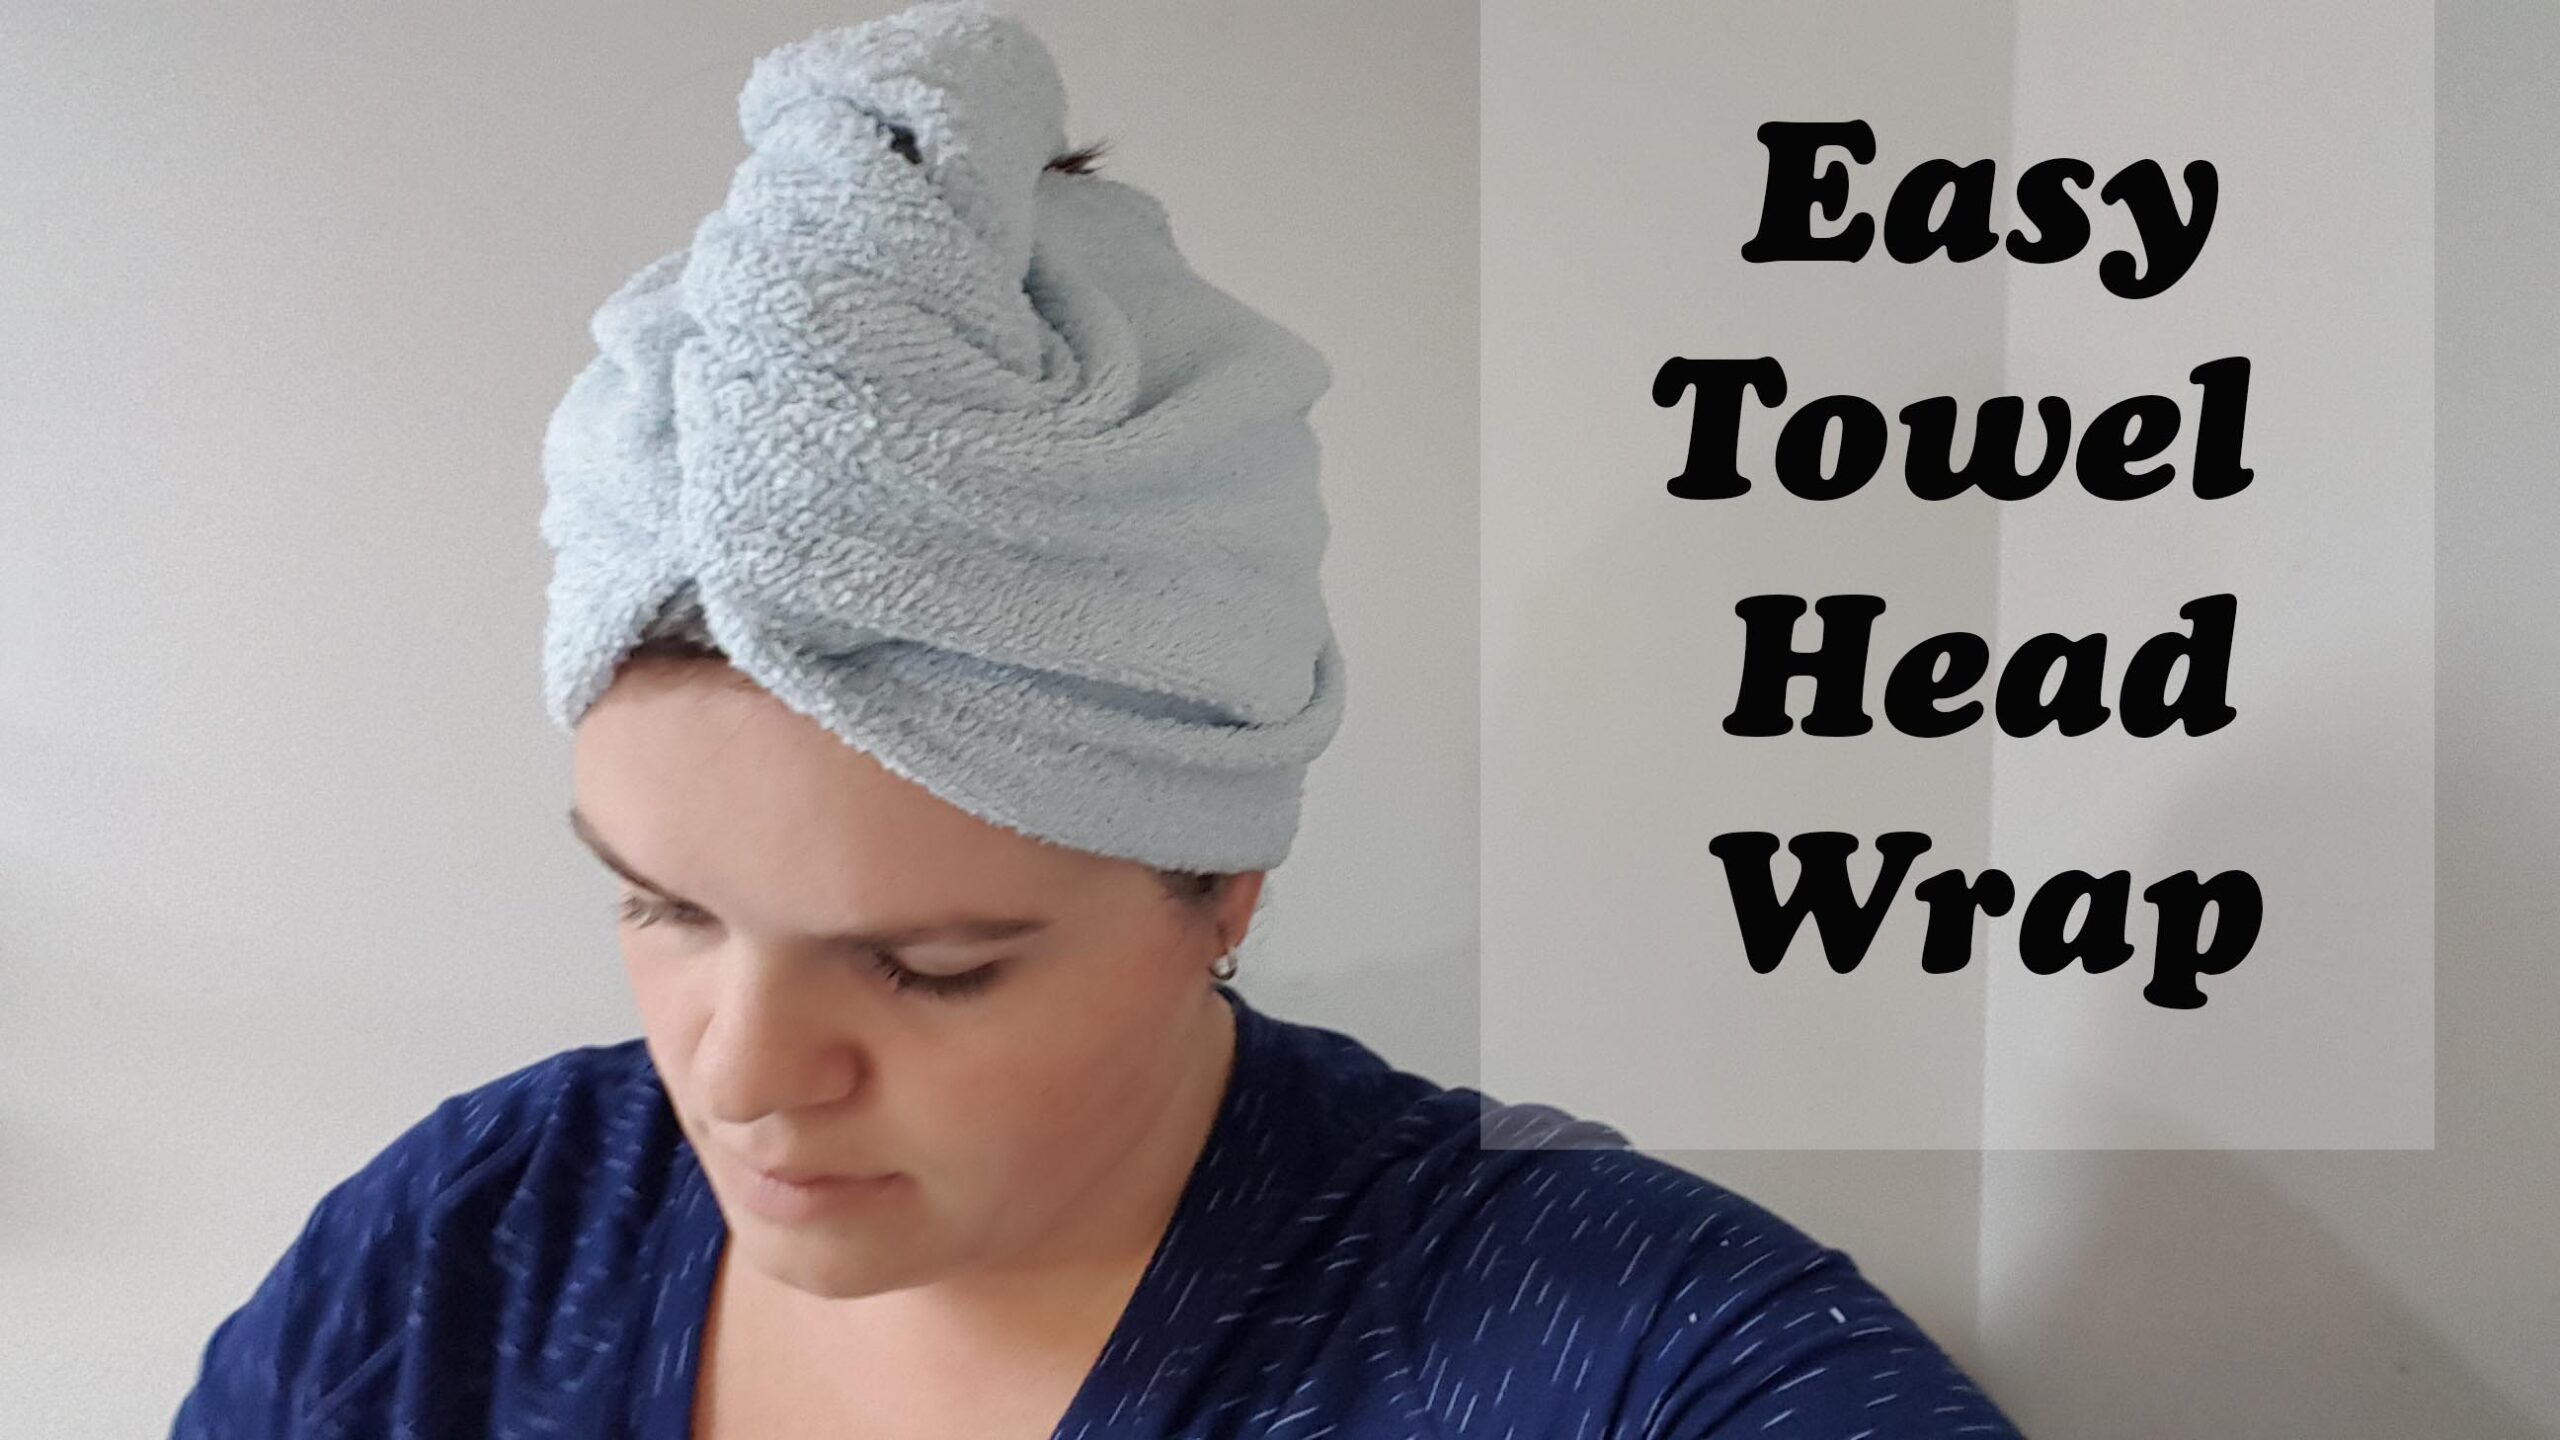 Easy towel Head Wrap